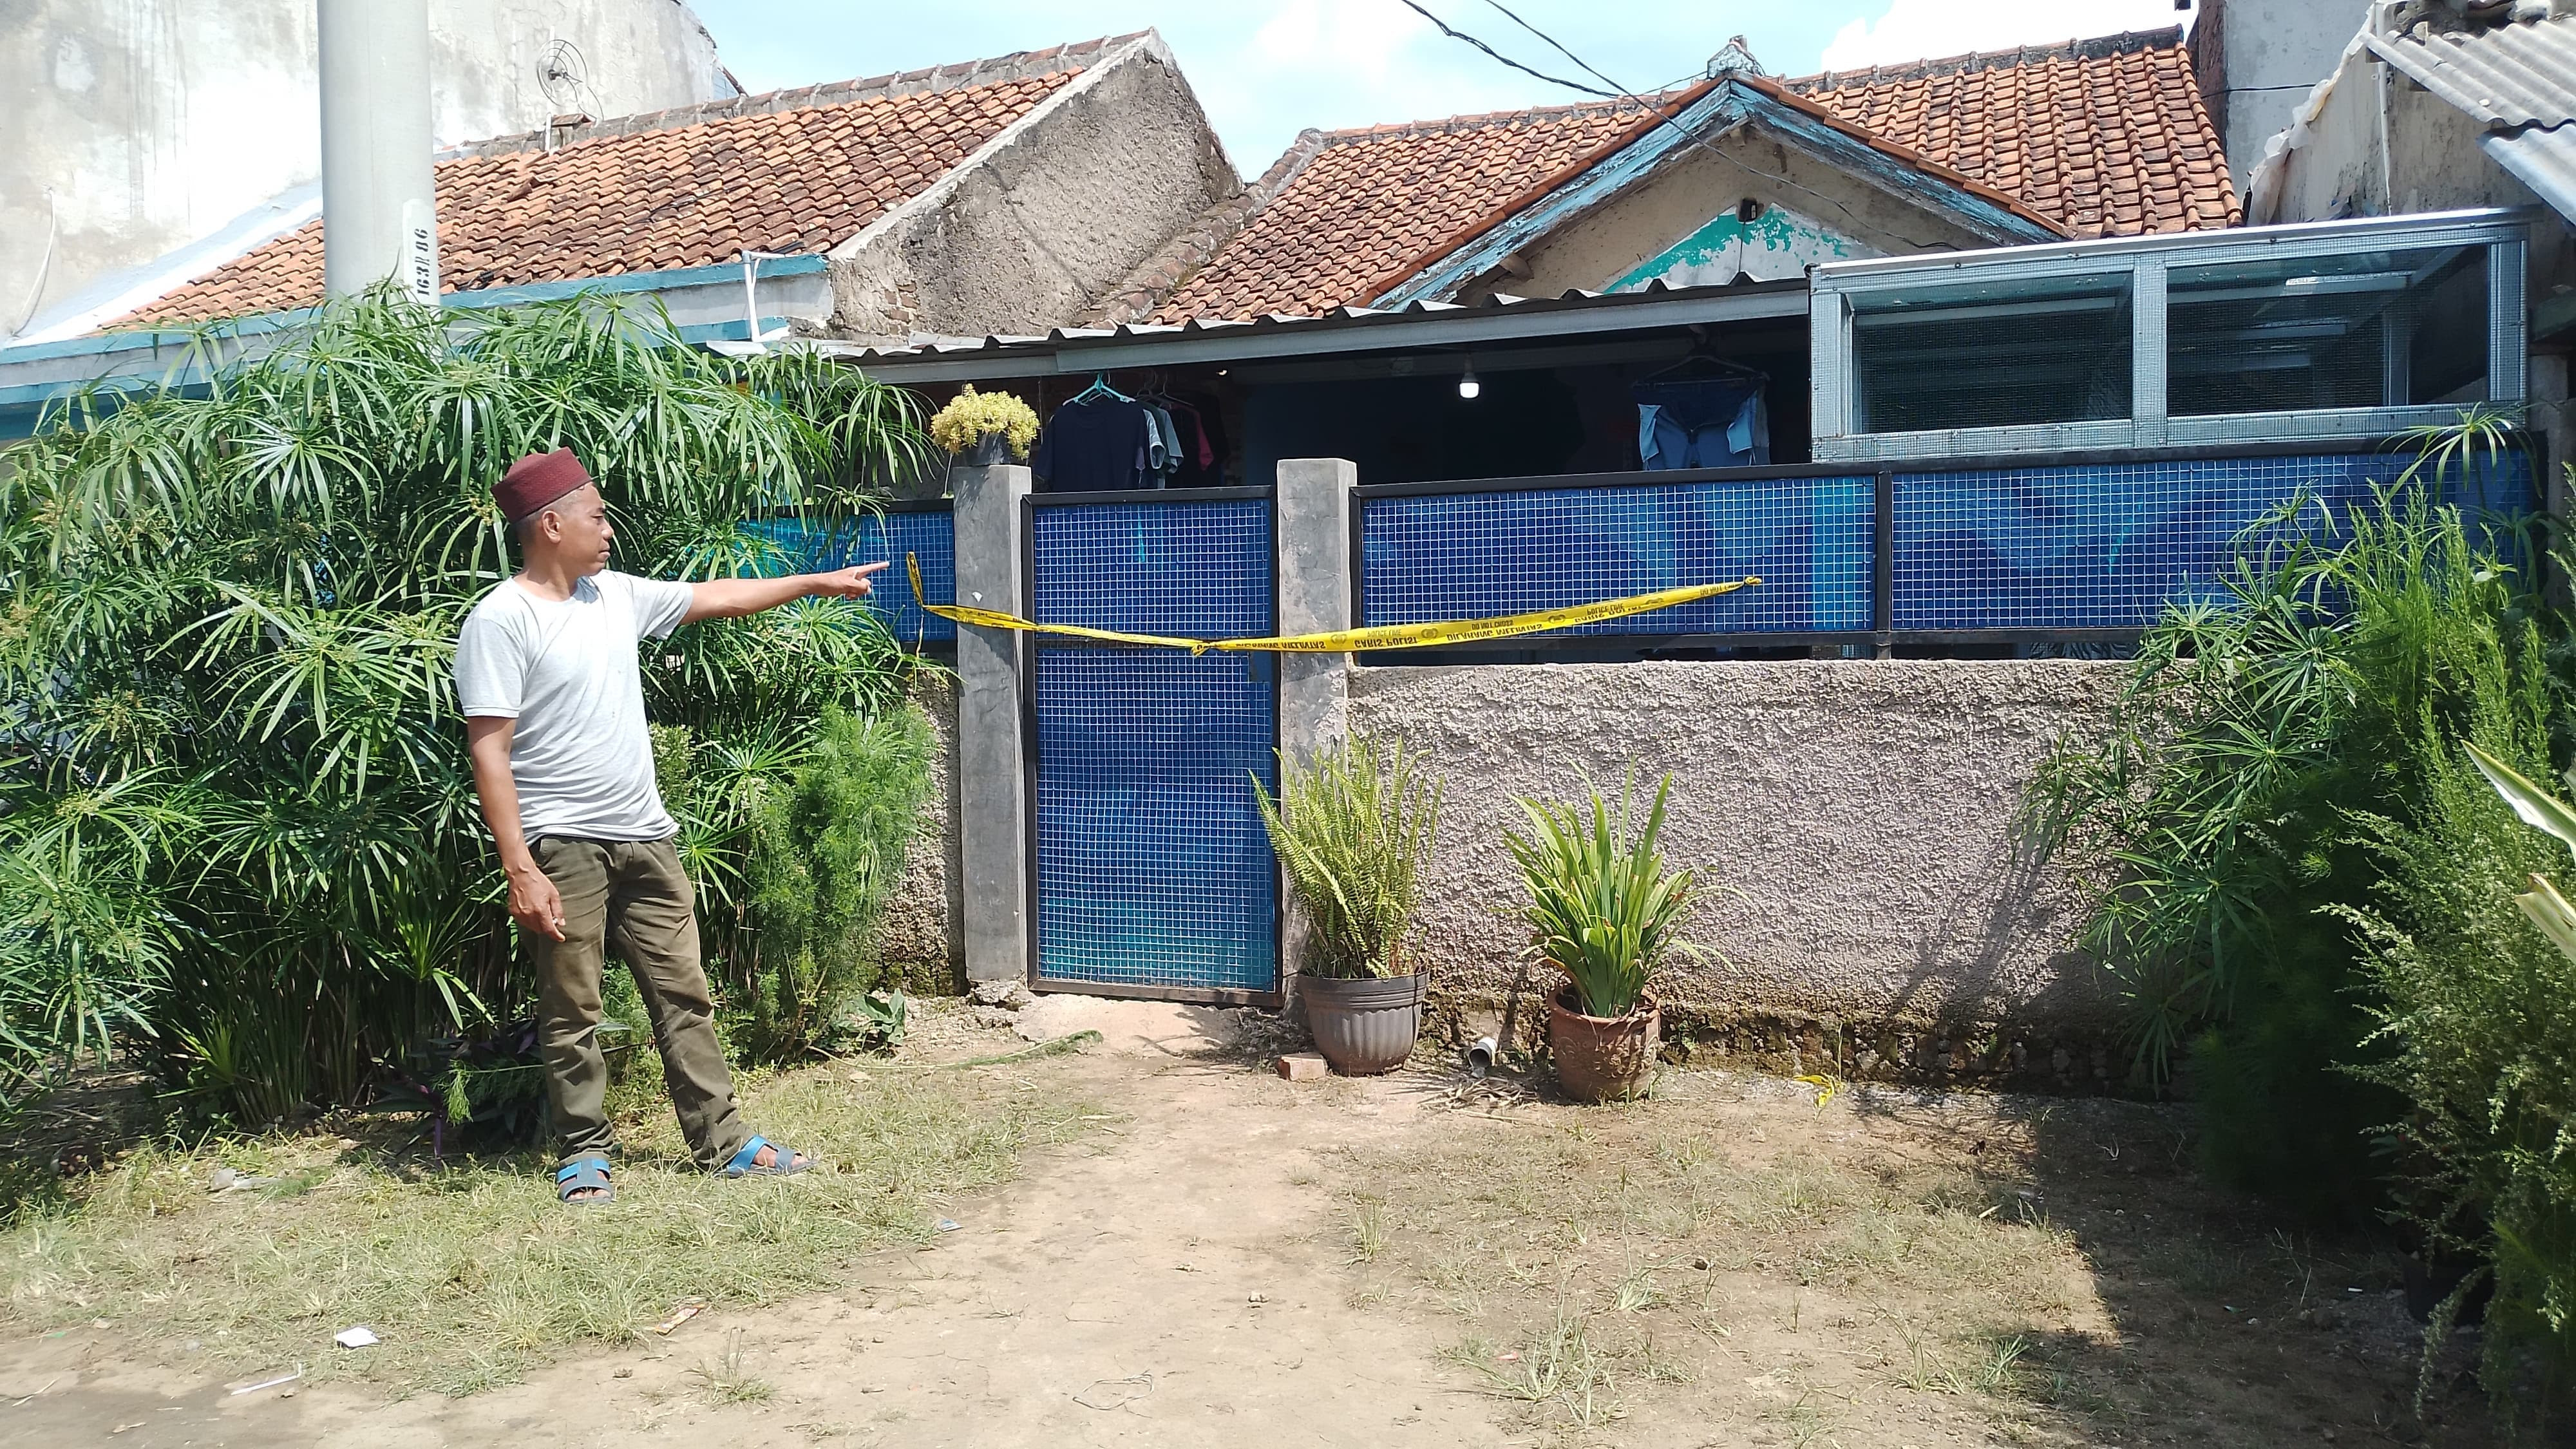 Seorang Suami di Bandung Menyerahkan Diri ke Polisi Seusai Bunuh Istrinya Pakai Cangkul - JPNN.com Jabar